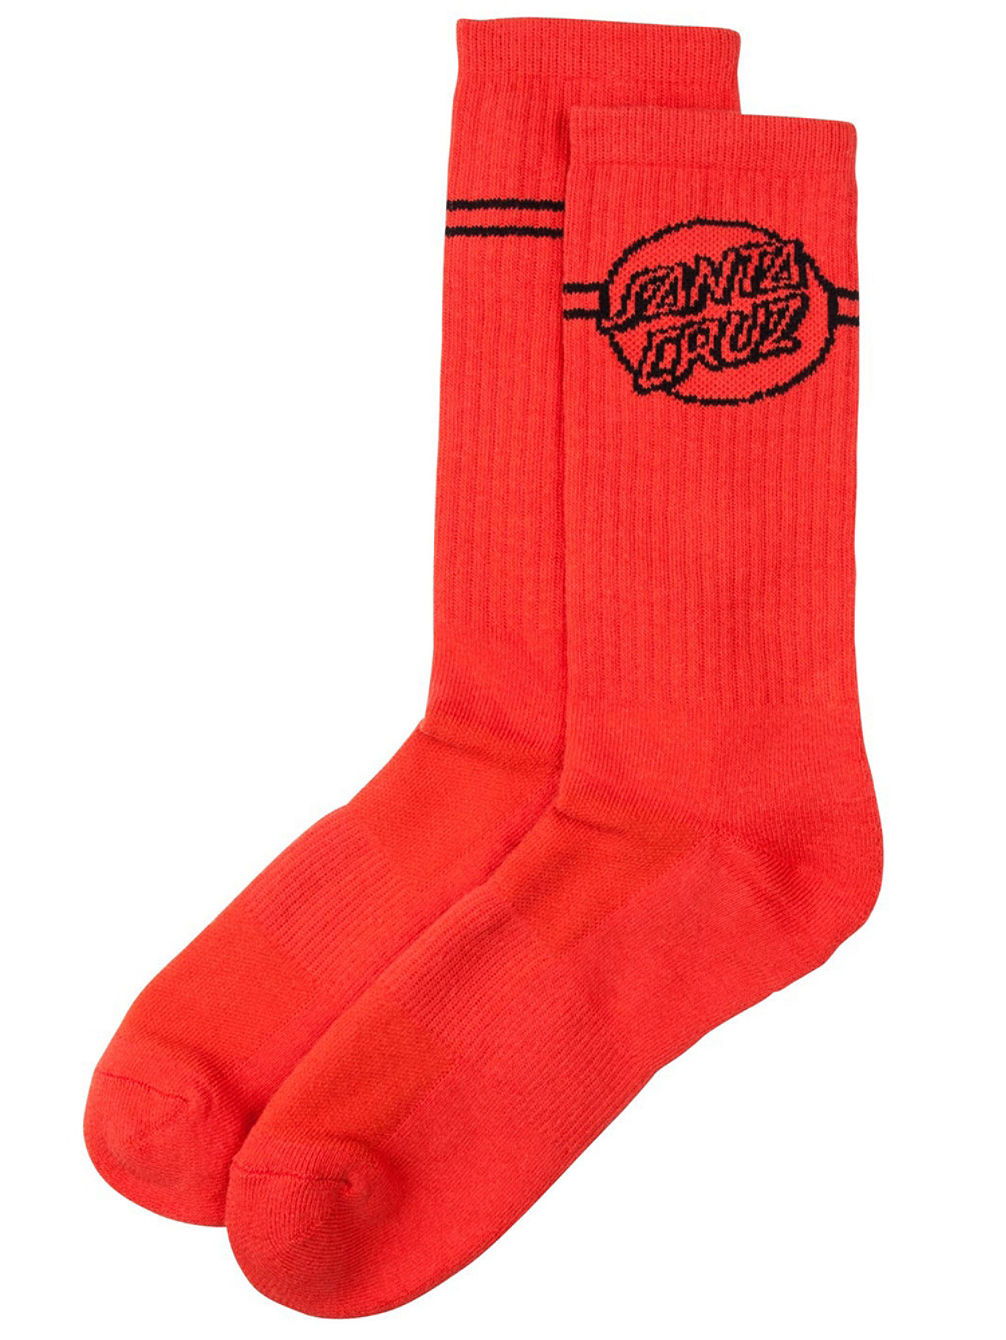 Opus Dot Stripes Socks